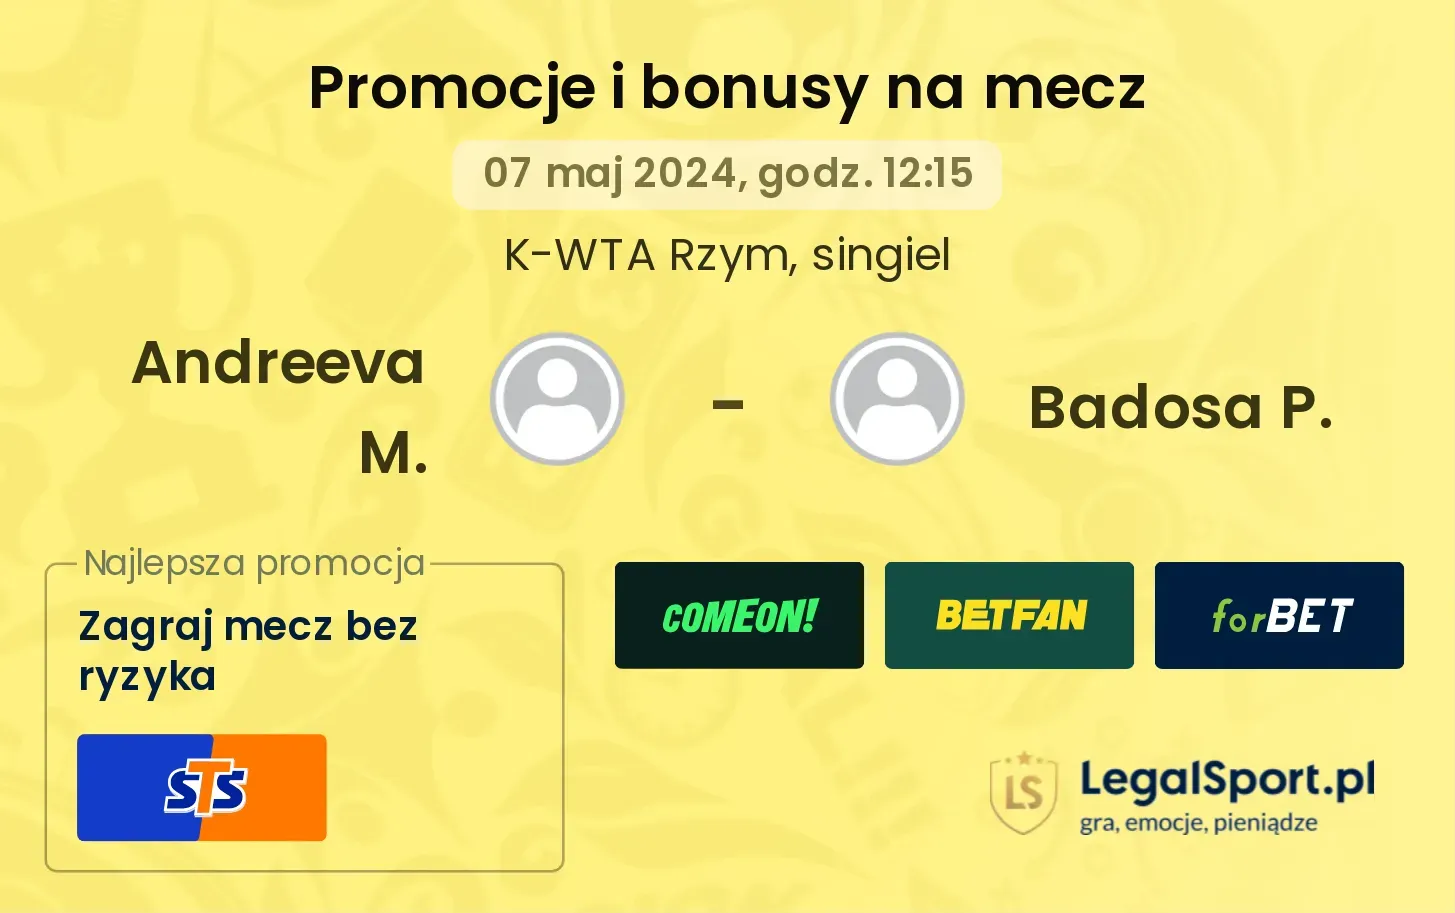 Andreeva M. - Badosa P. promocje bonusy na mecz